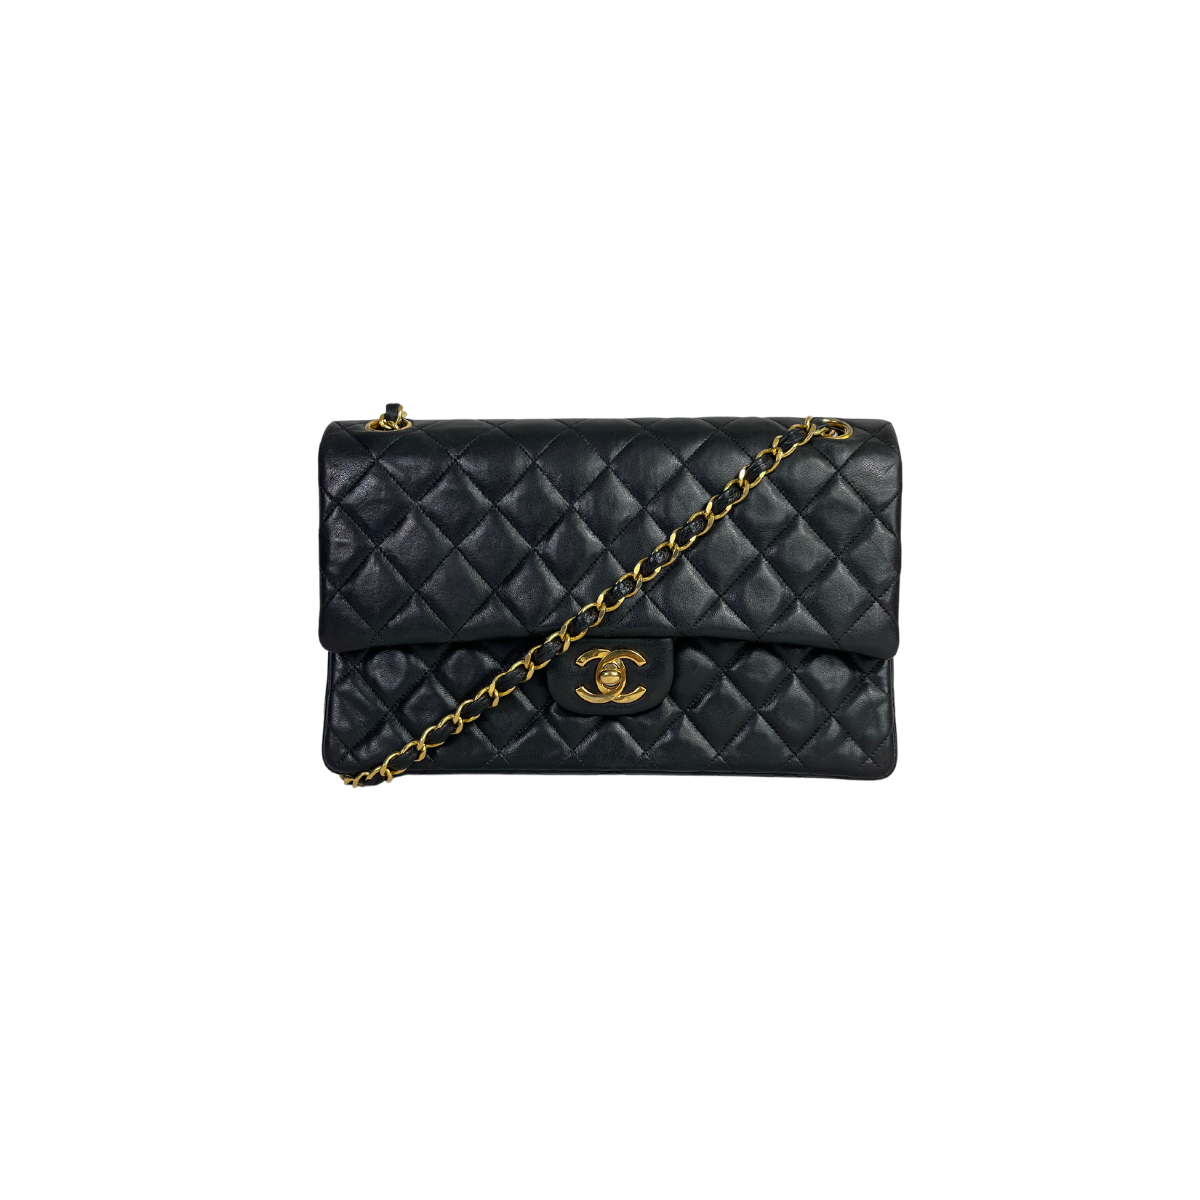 chanel medium caviar handbag